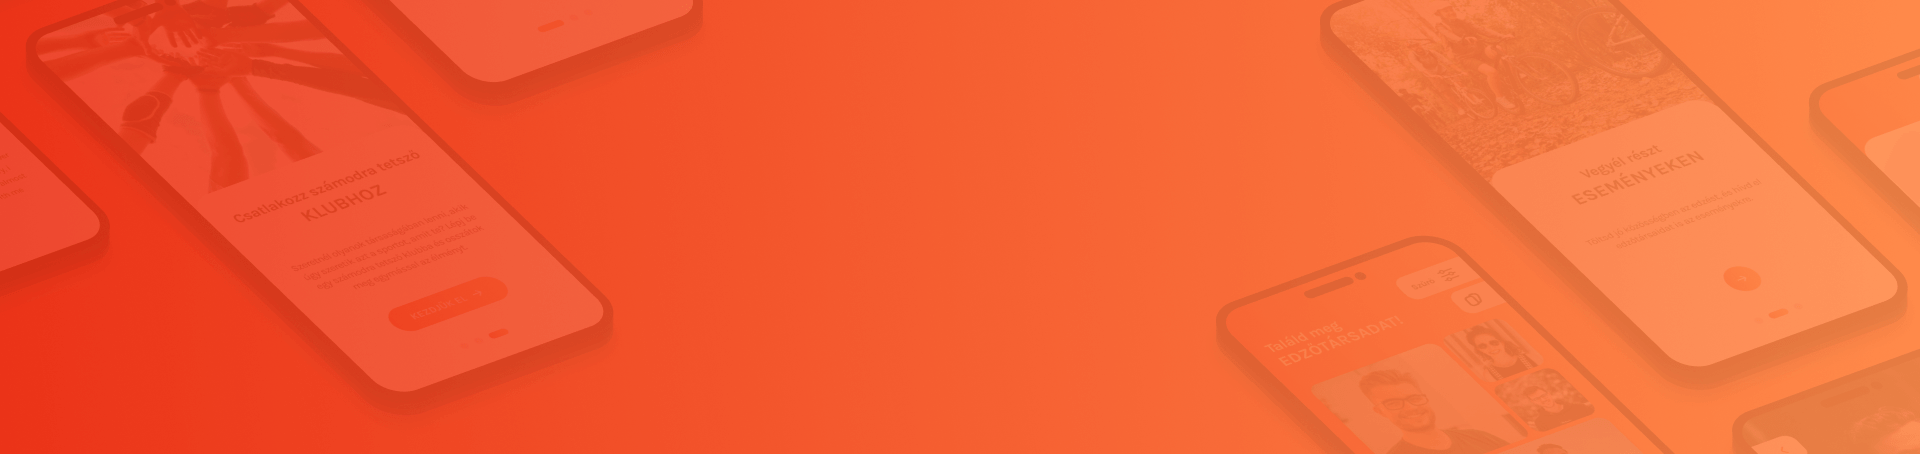 Splinker application orange colored background image